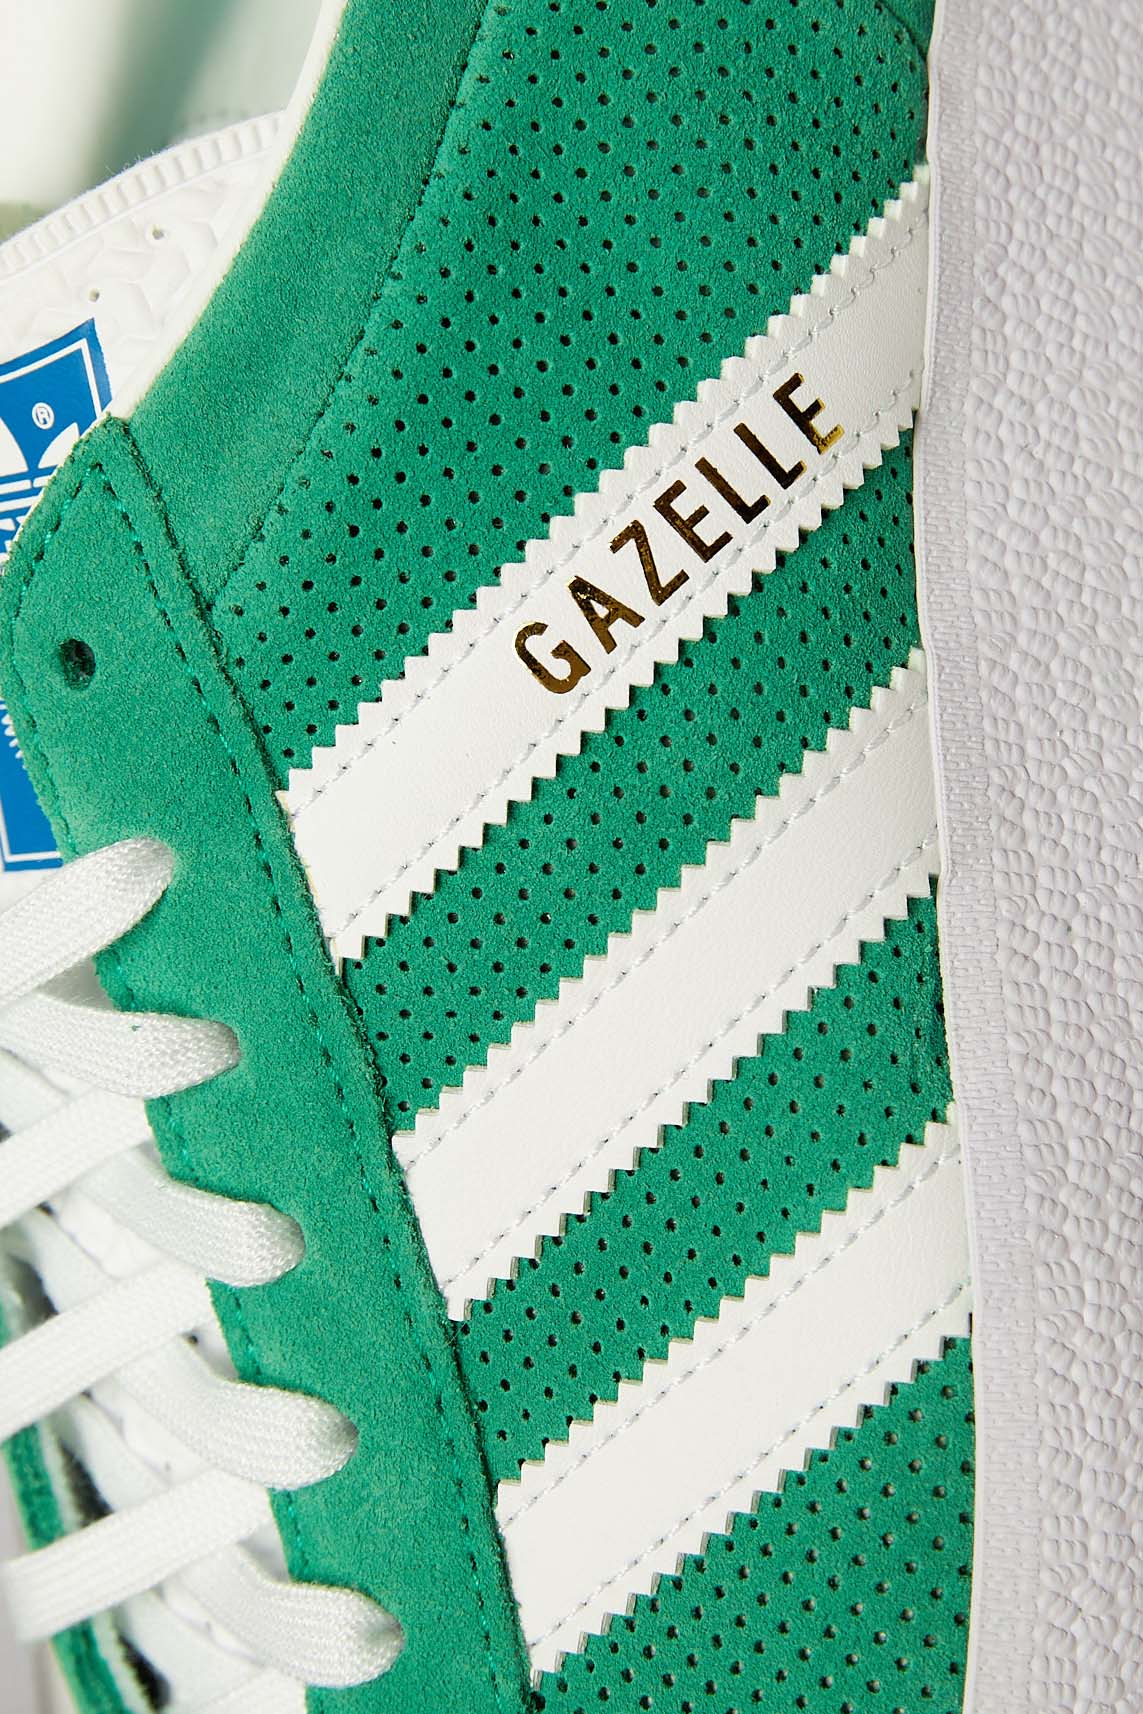 Adidas Gazelle 'Green/White/Gold'